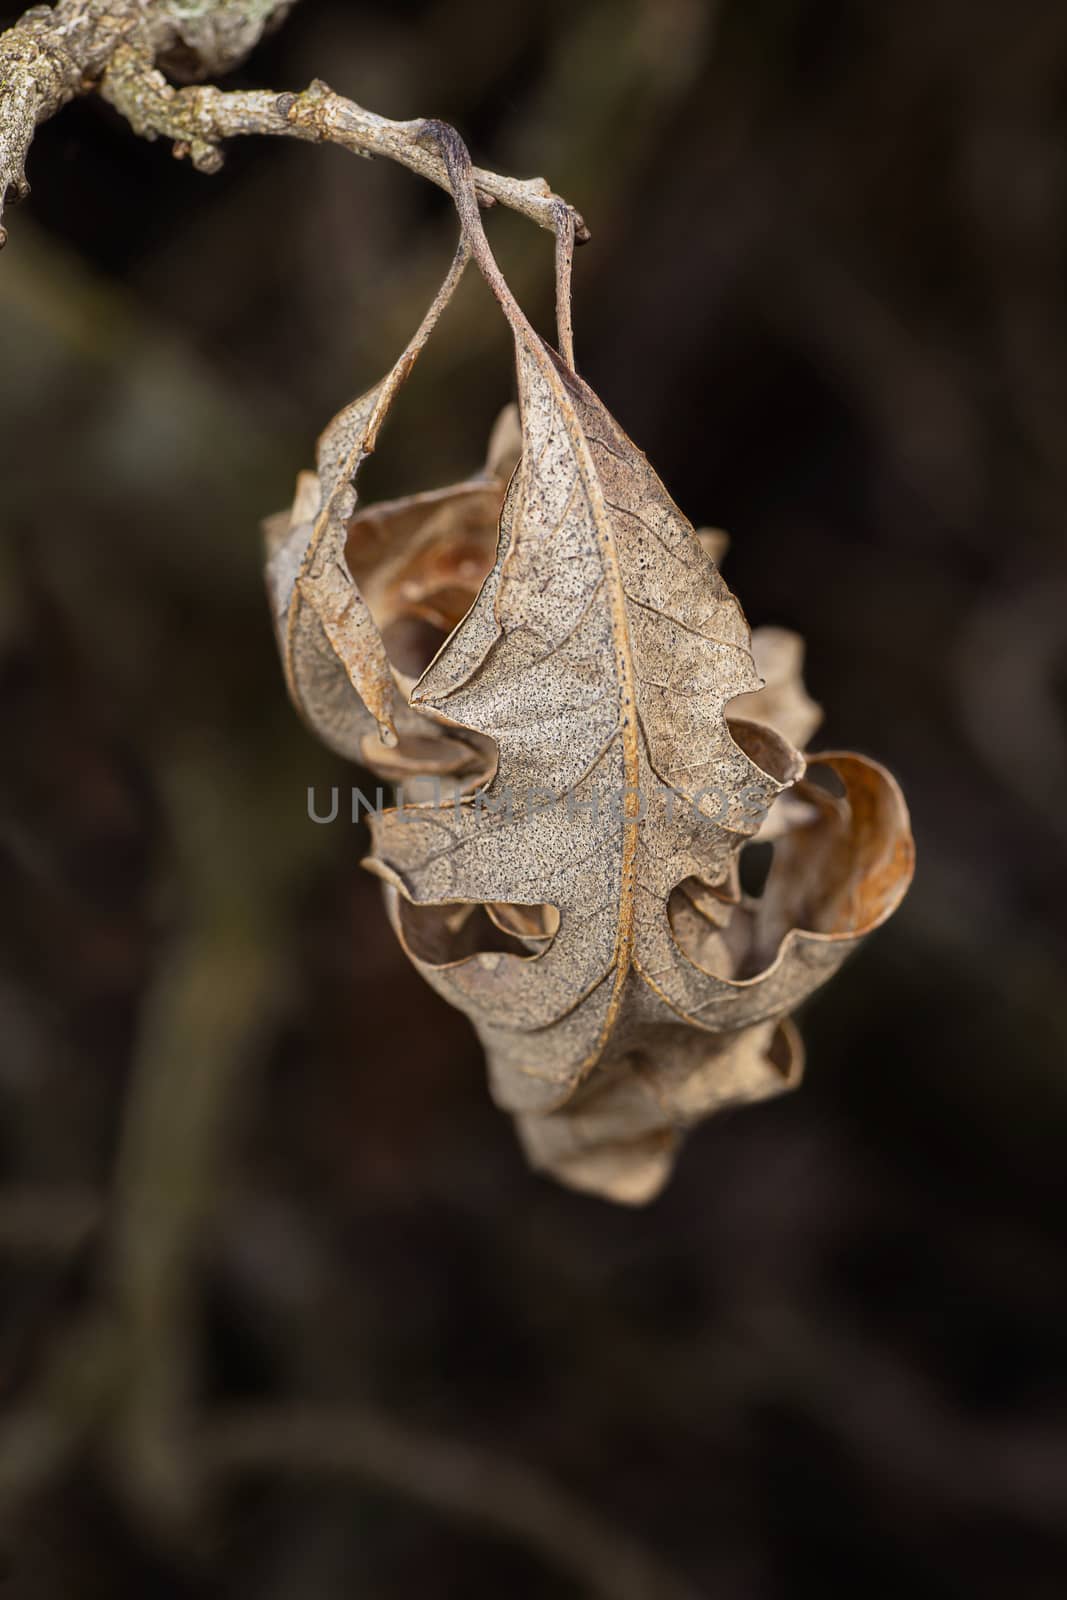 brown dried leaf still attach to a branch